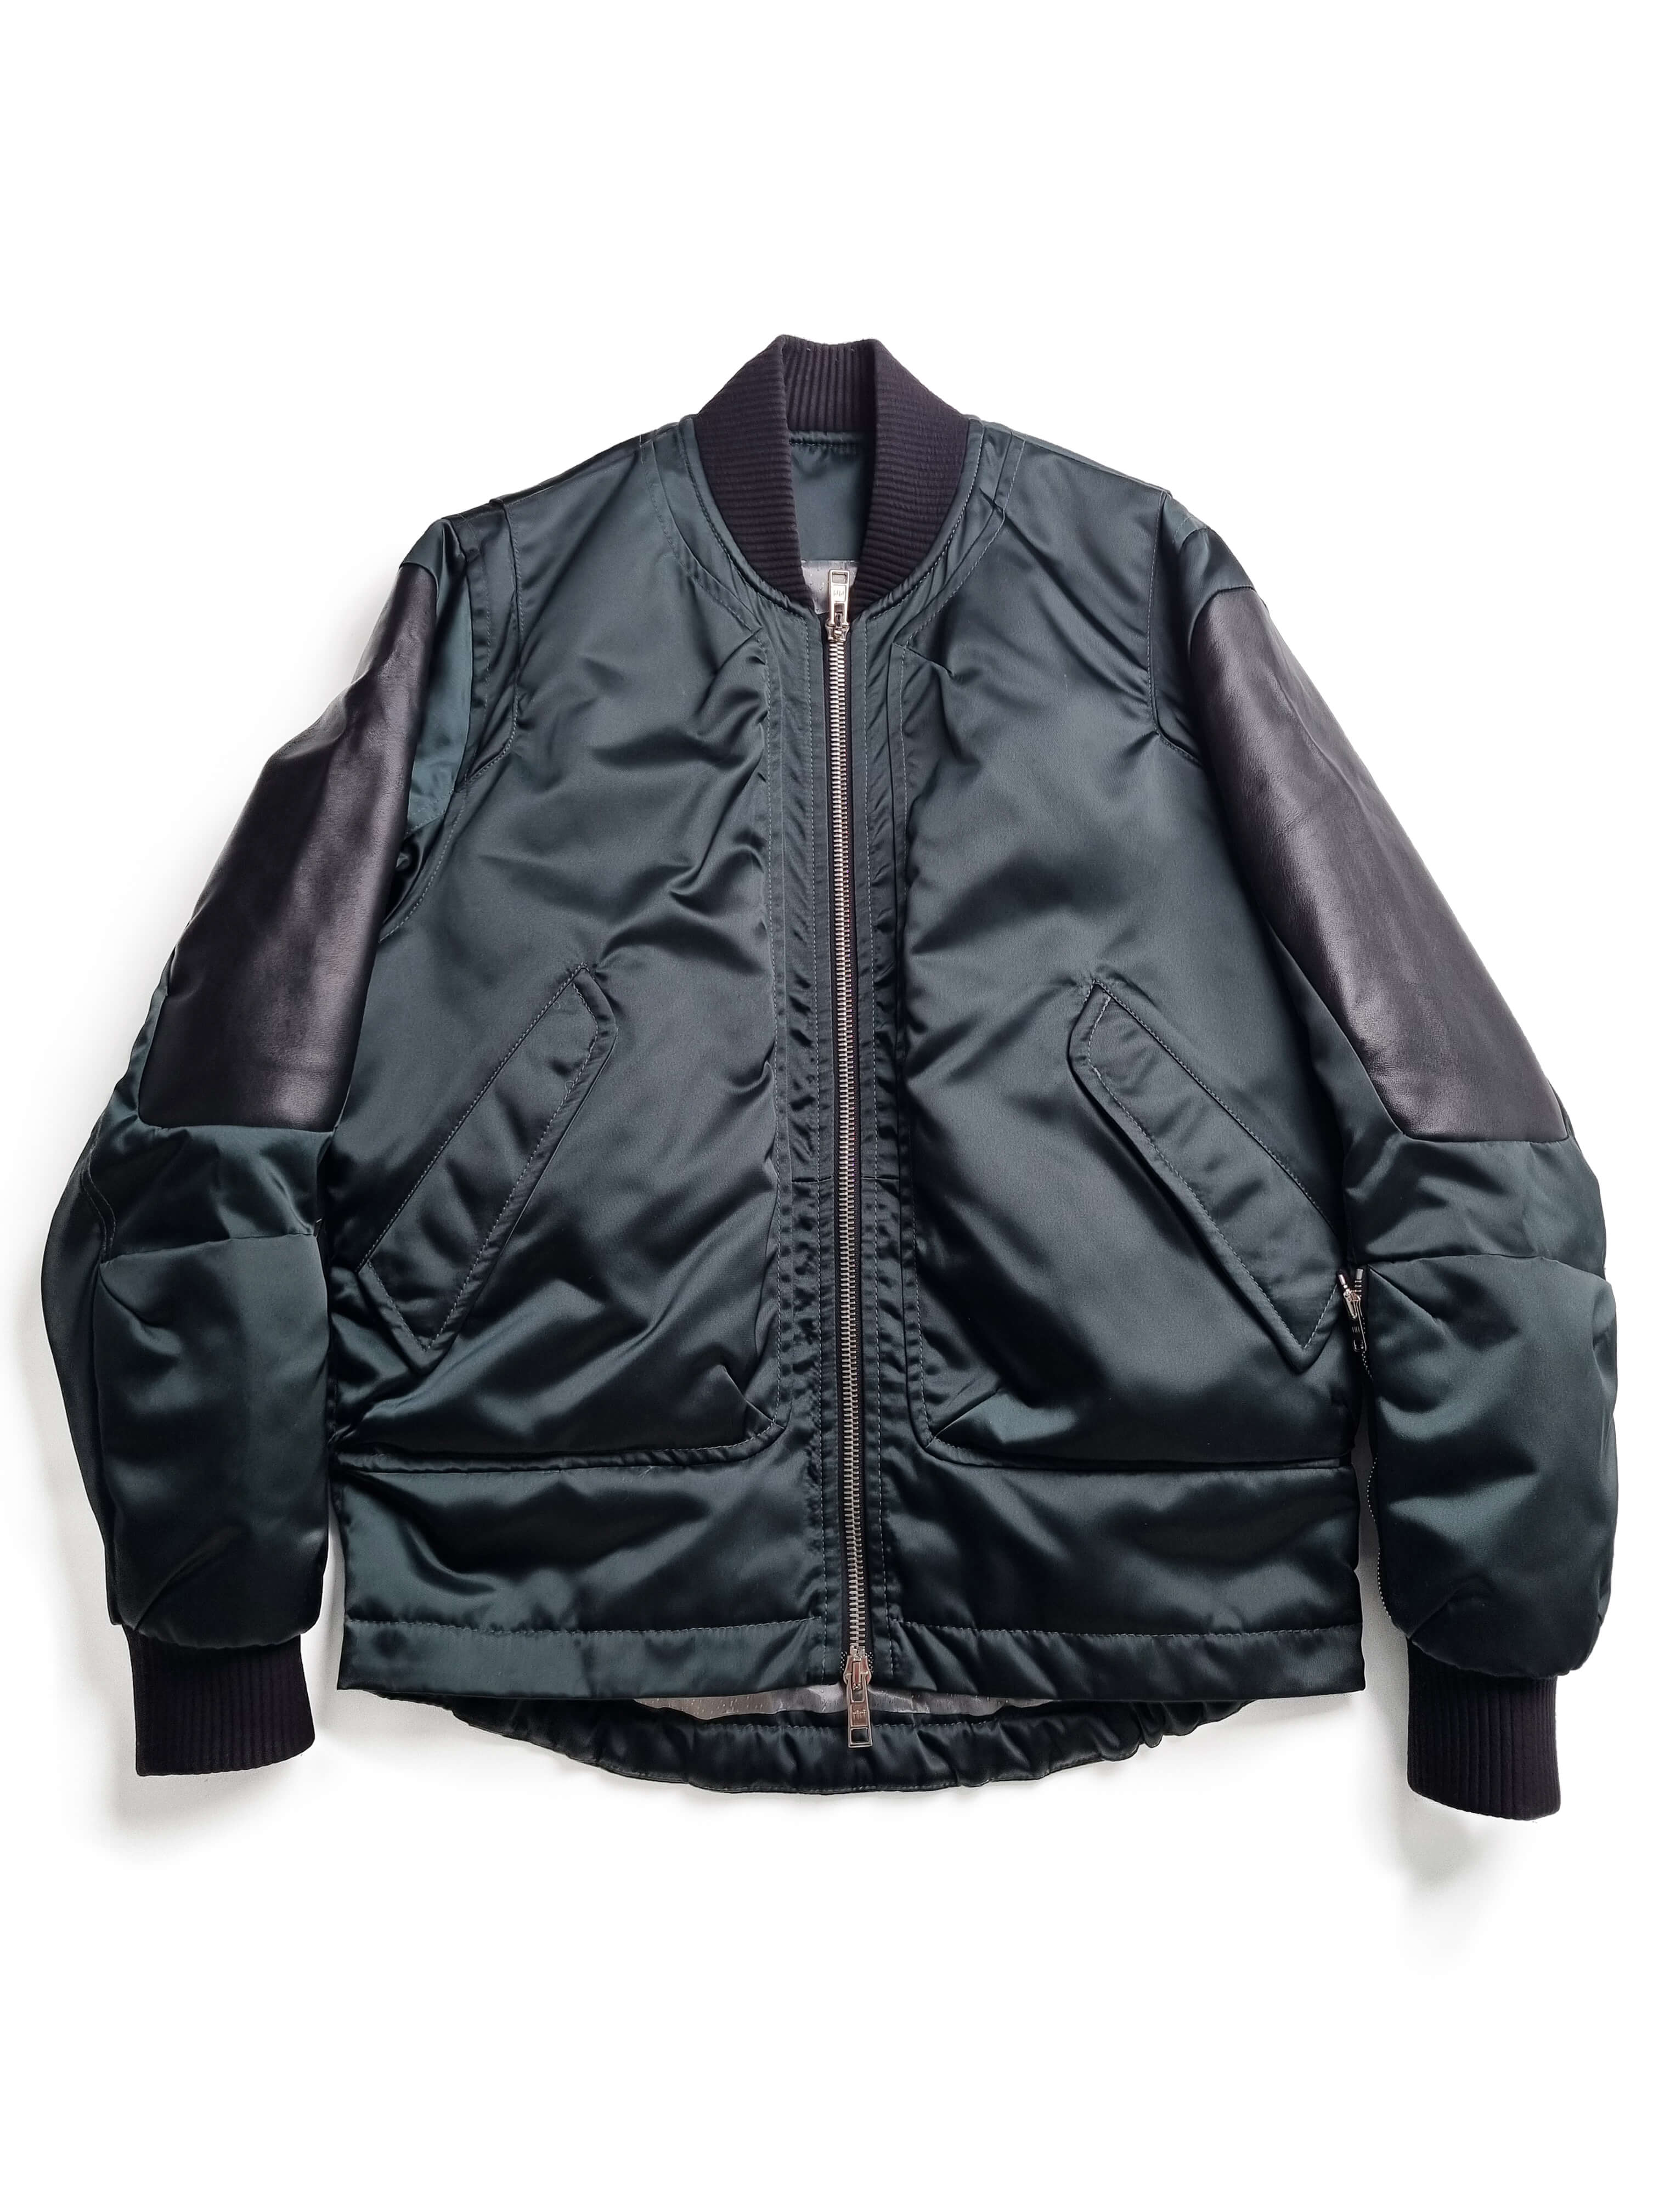 TIM COPPENS 2015aw nylon leather blouson